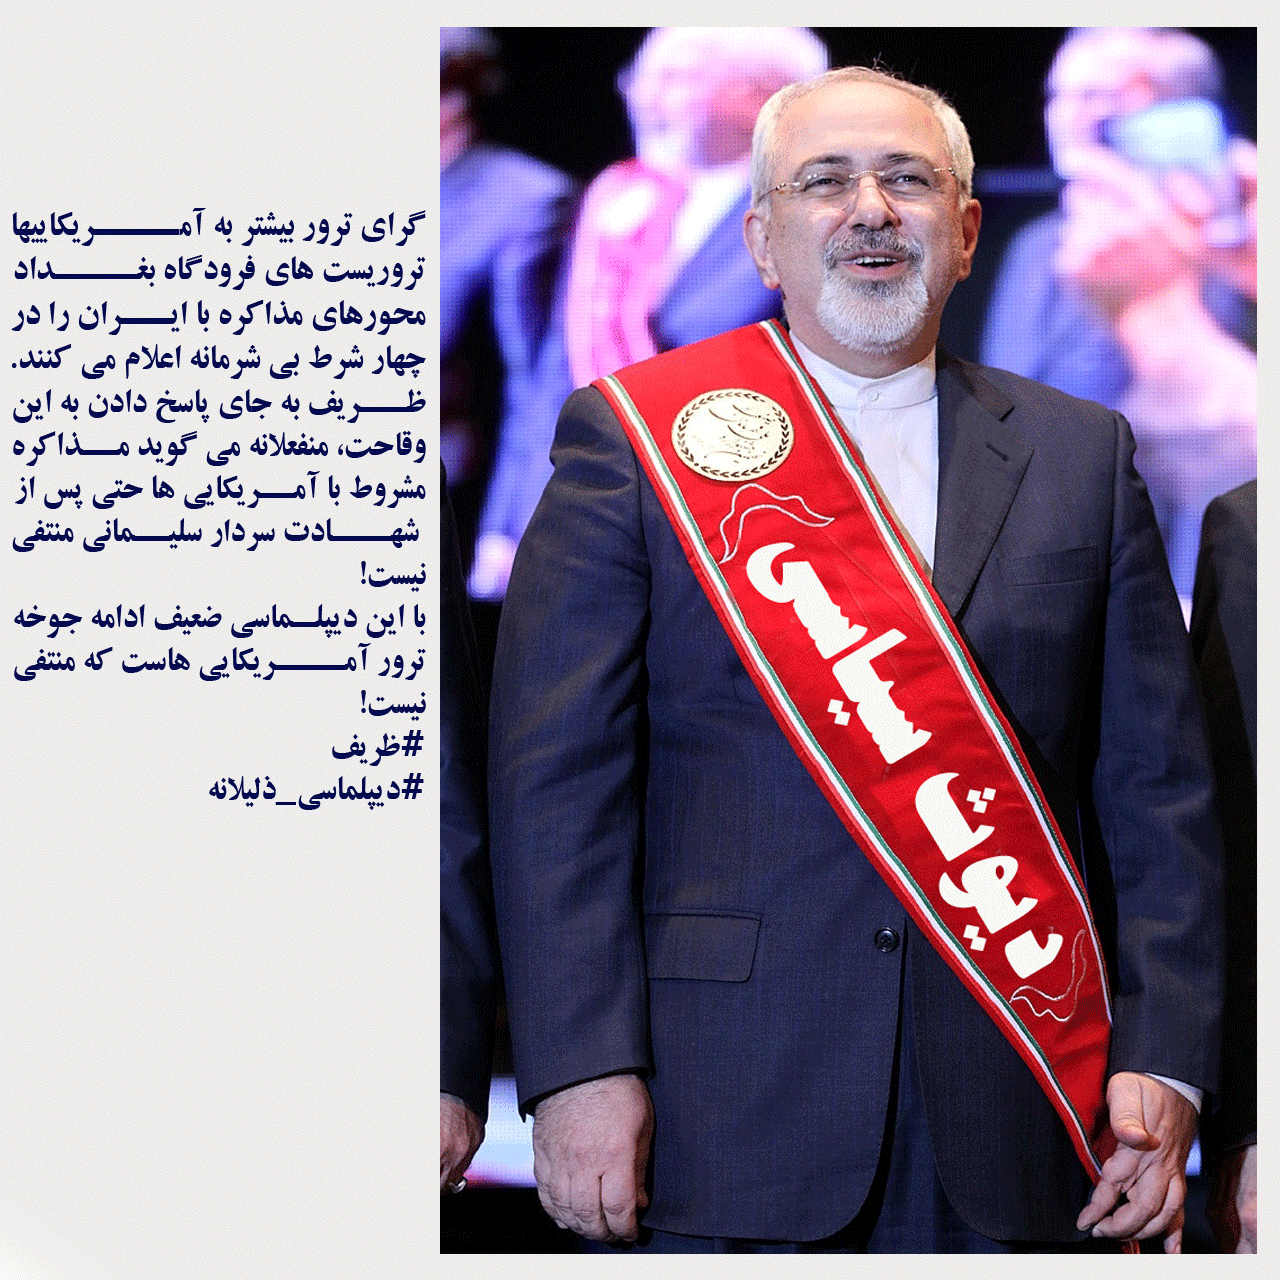  وزیر خارجه کدام ایران؟!!